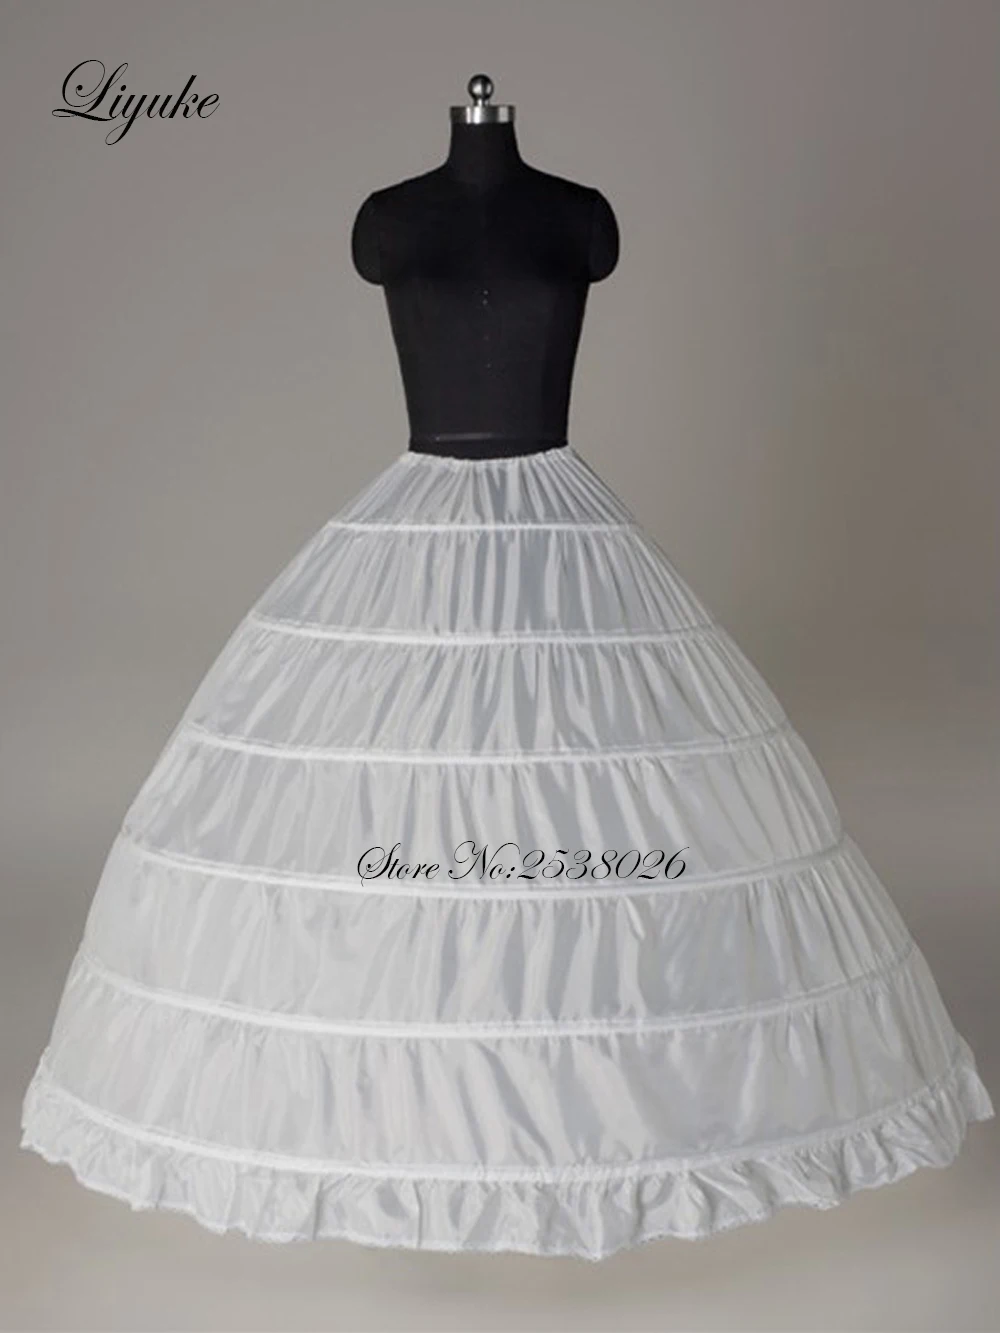 Liyuke фото белый цвет 3 и 6 Обручи Свадьба Нижняя юбка используется для линии свадебное платье Enagua nupcial